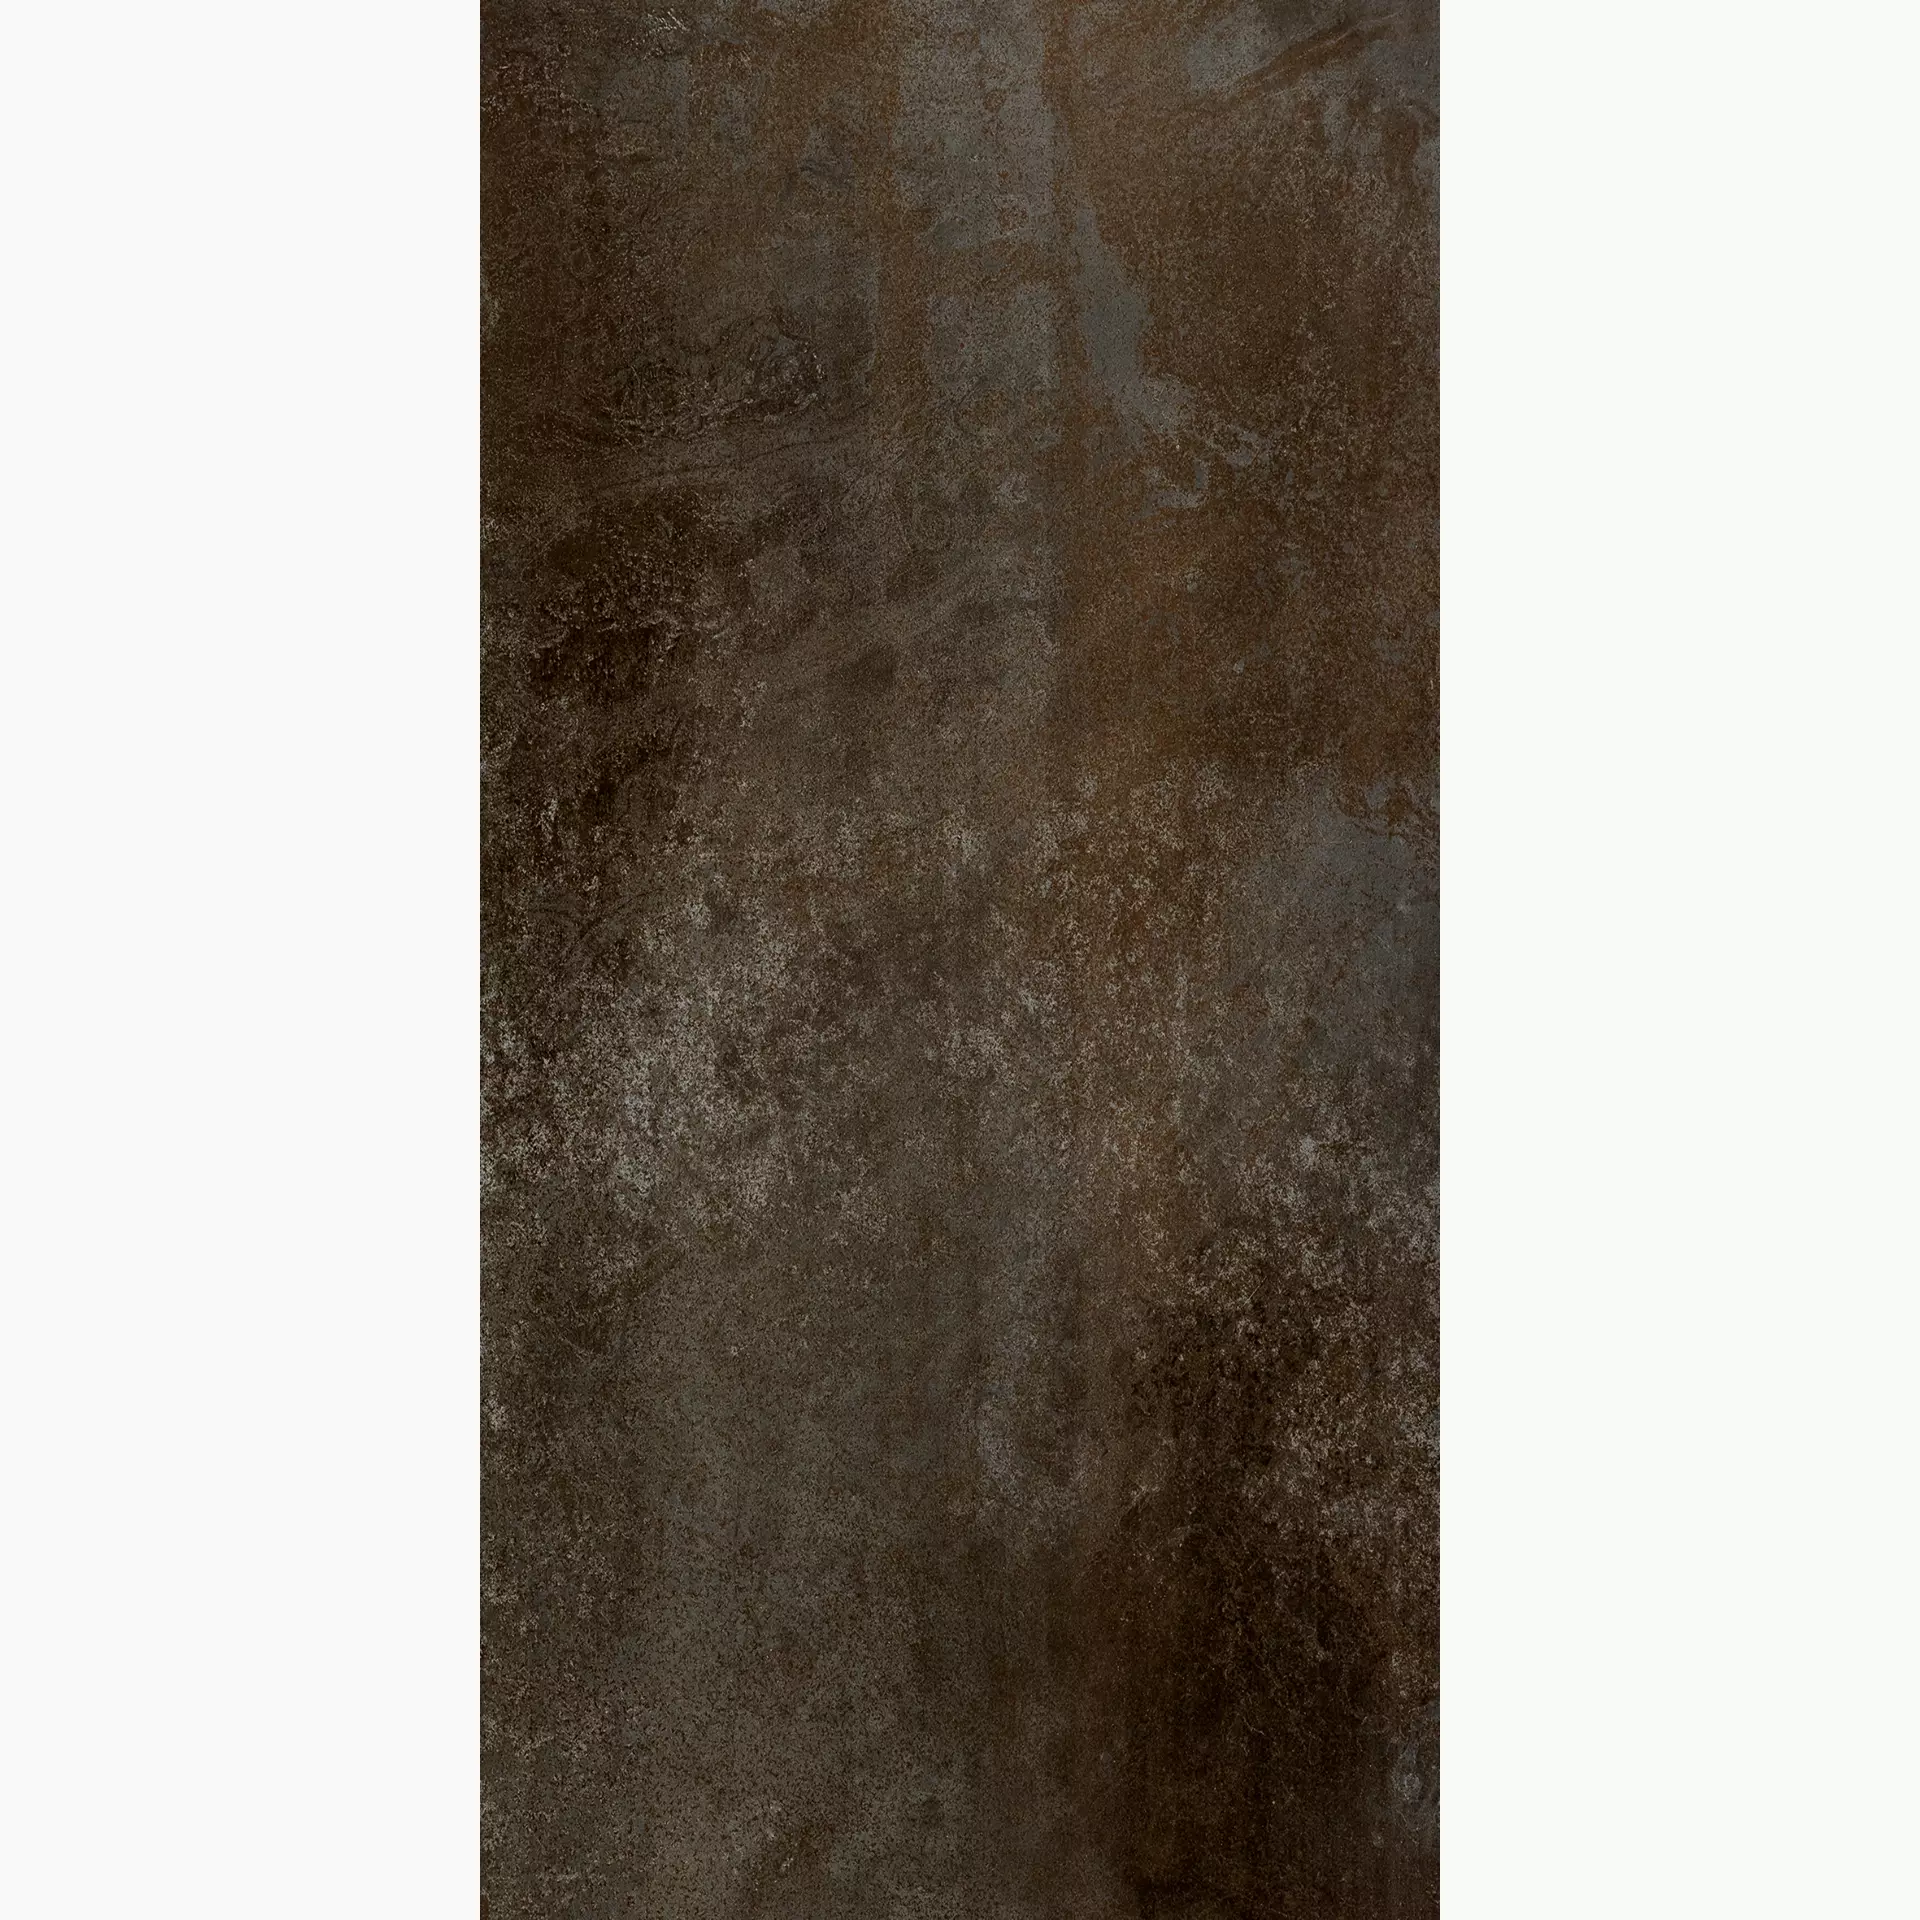 Florim Flowtech Aged Bronze Naturale – Matt Aged Bronze 757071 matt natur 60x120cm rektifiziert 9mm